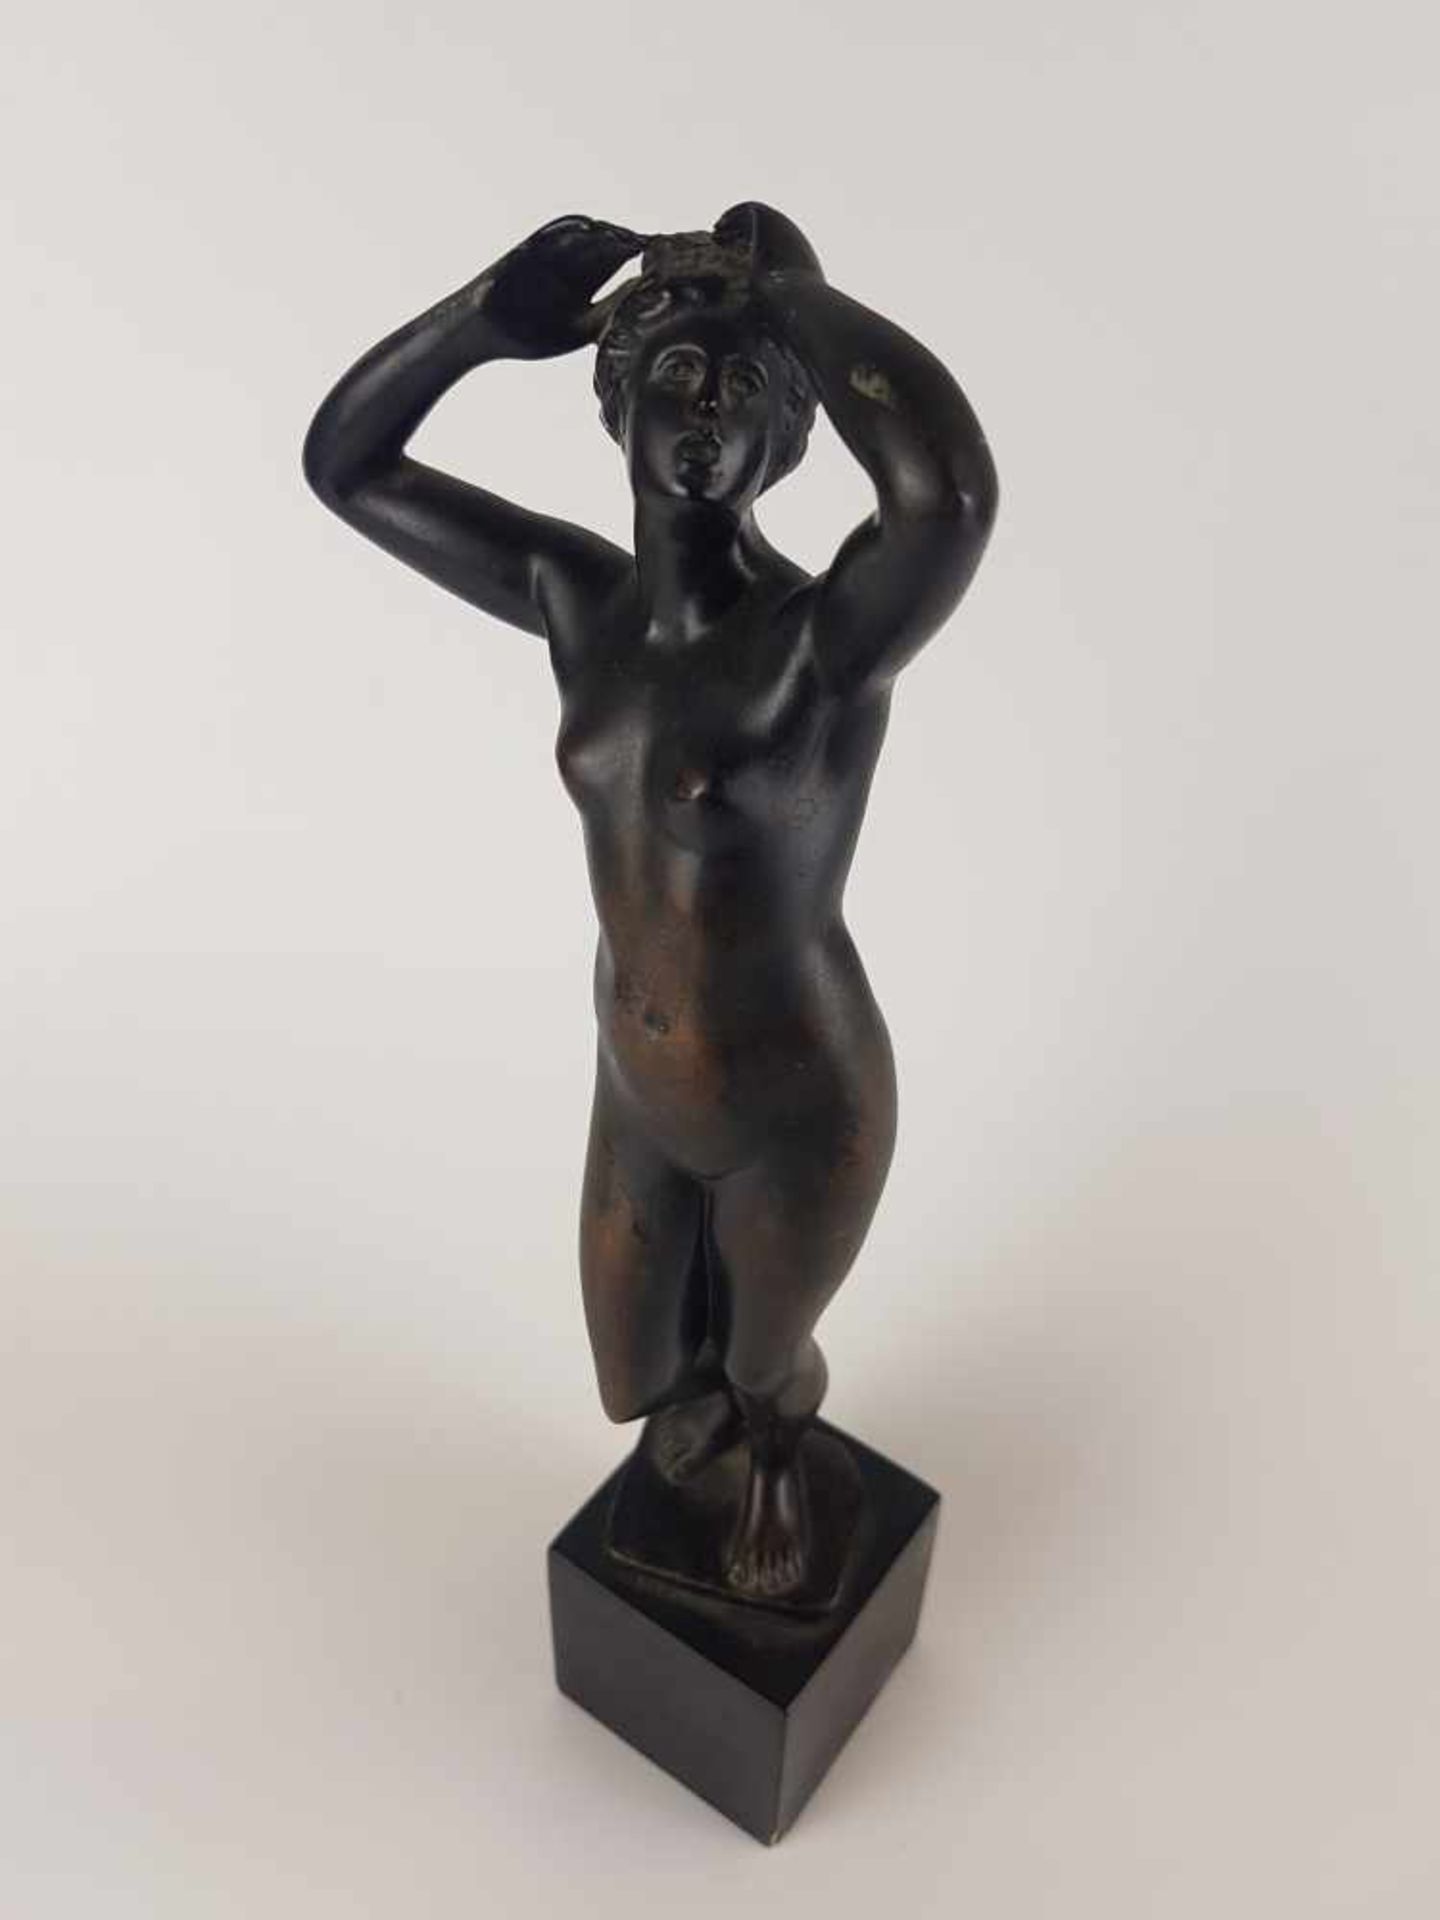 Figur "Klagende Venus" - Metall, bronziert, auf der Plinthe bez. 'CARTINET' (franz. Bildhauer des